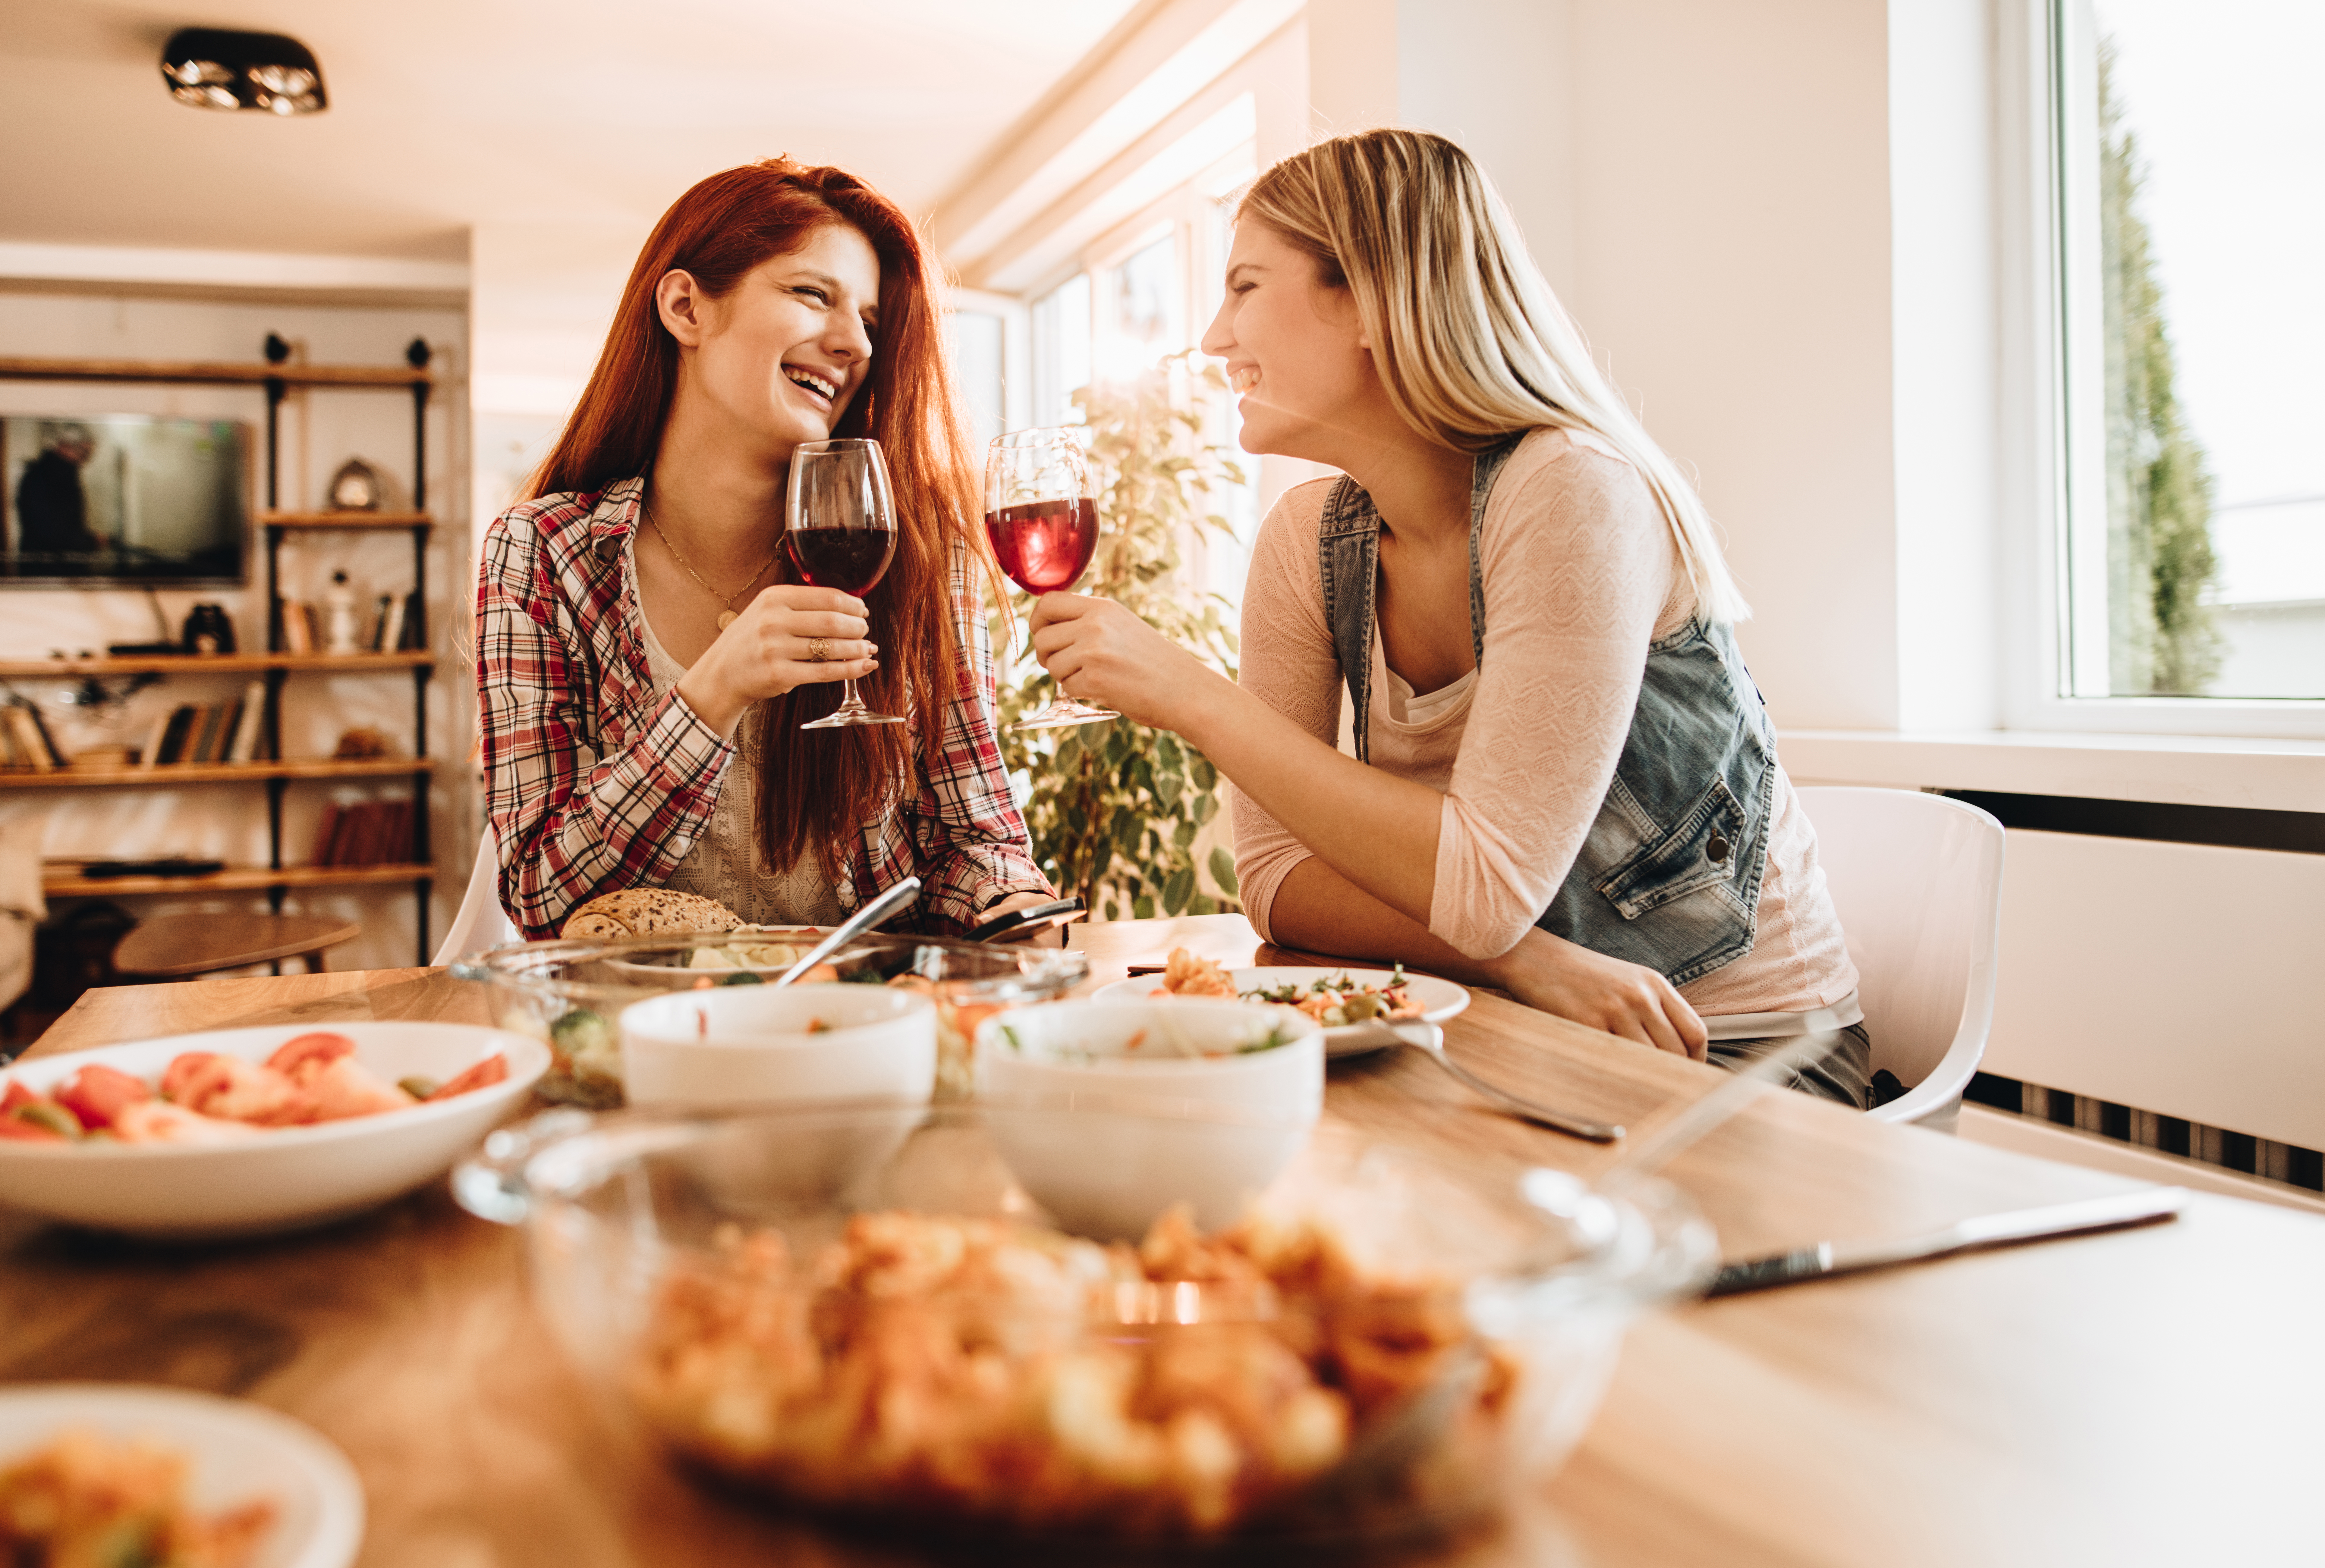 Jeunes femmes heureuses discutant et buvant du vin pendant le déjeuner | Source : Getty Images